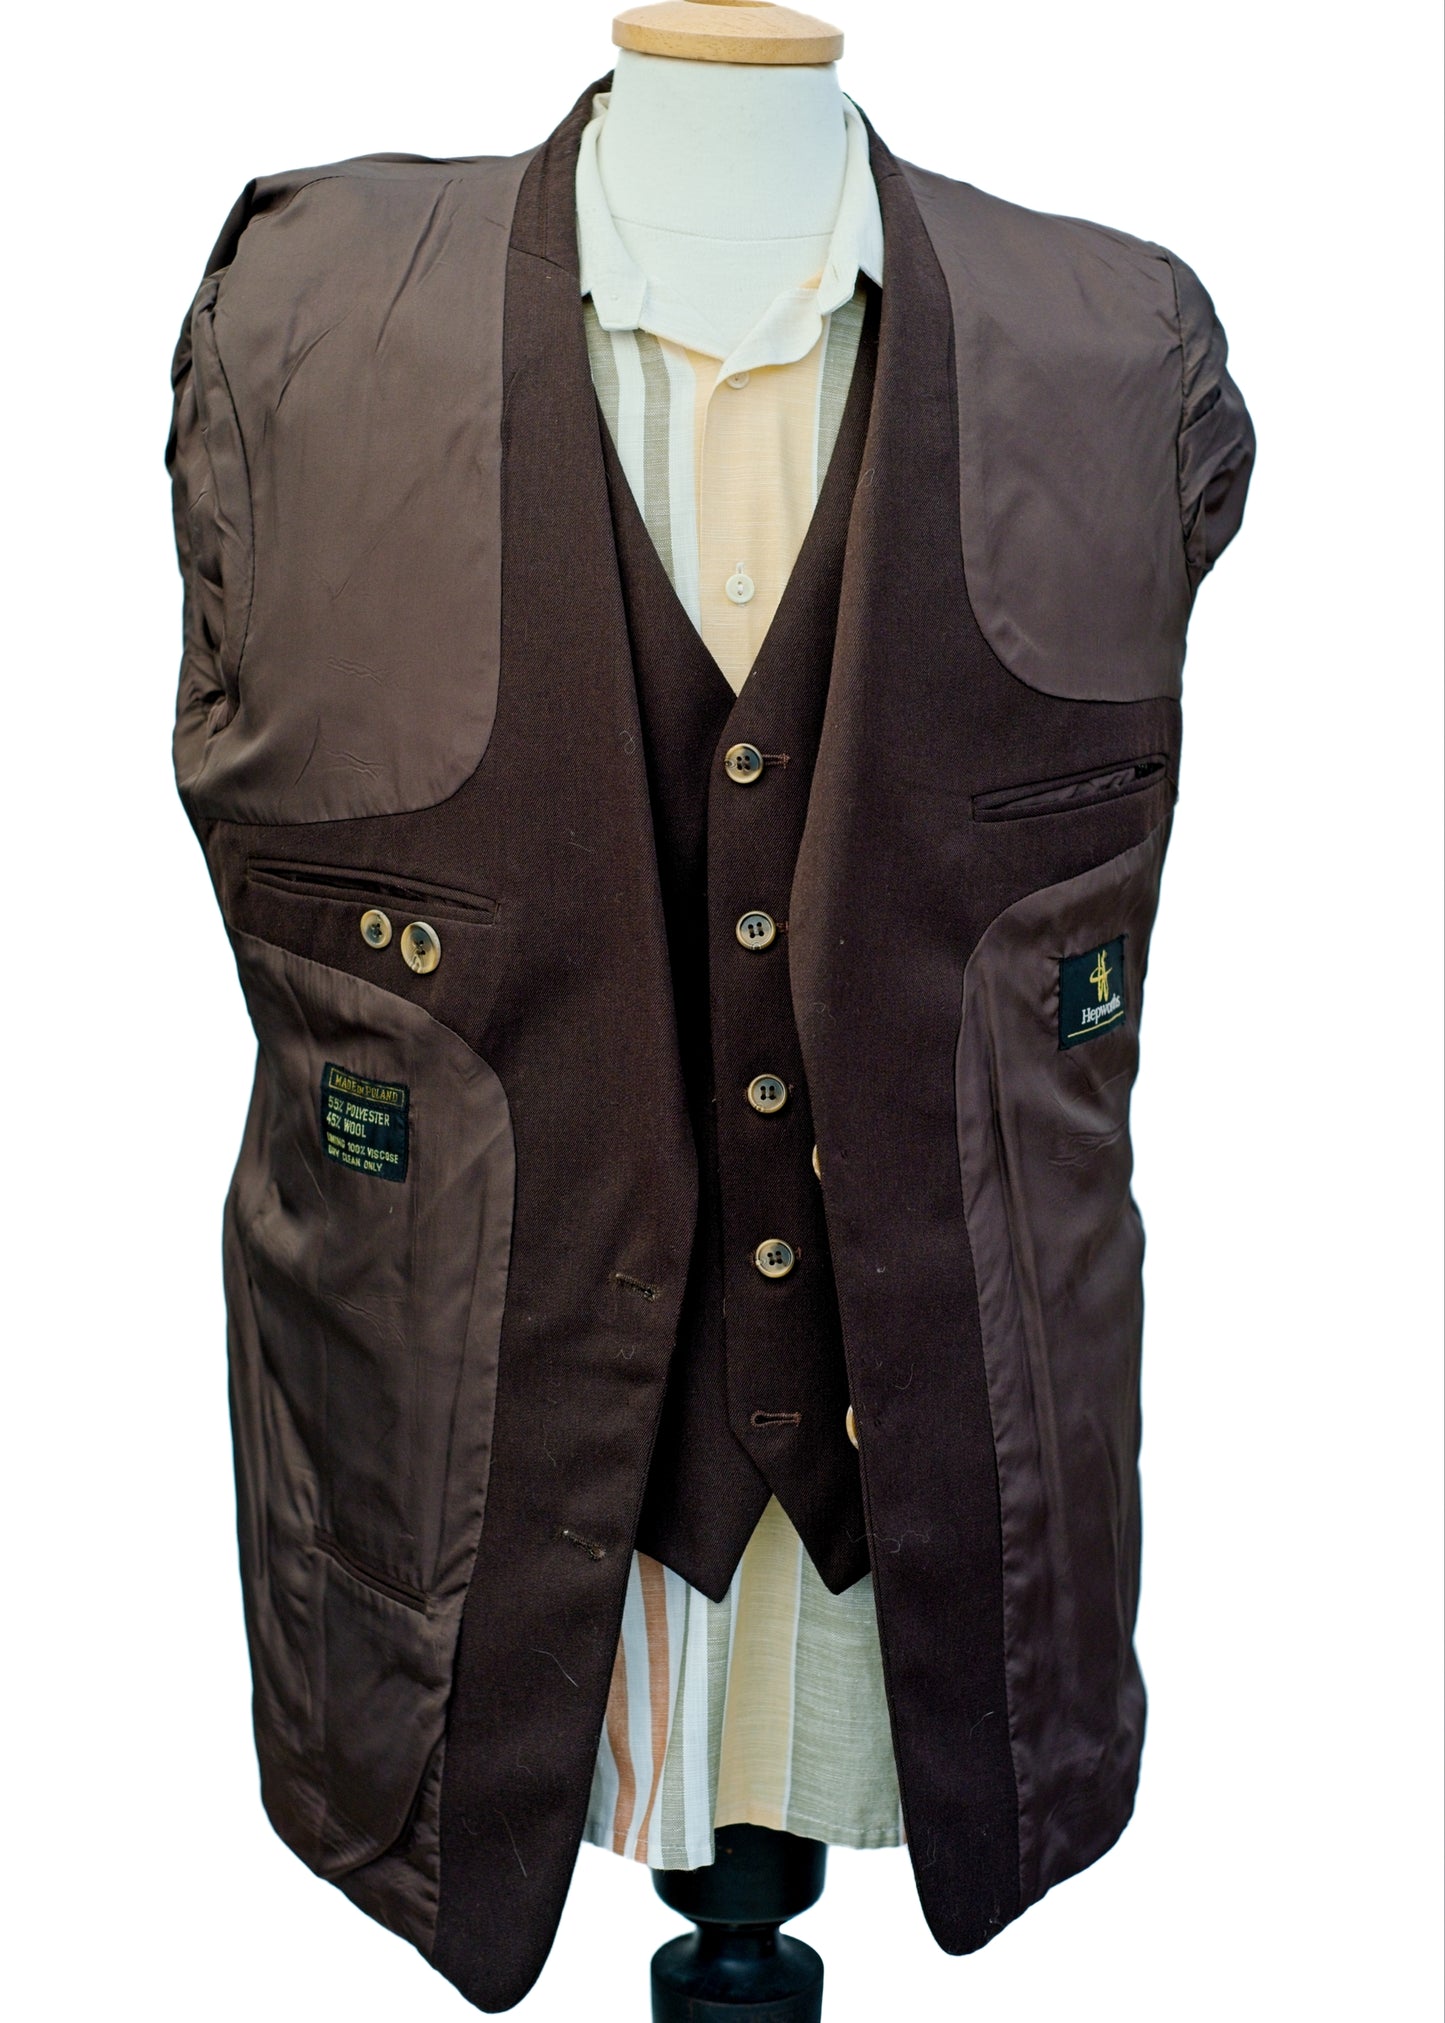 Men's Hepworth's Brown 2 Piece Jacket Waistcoat Suit • 42R